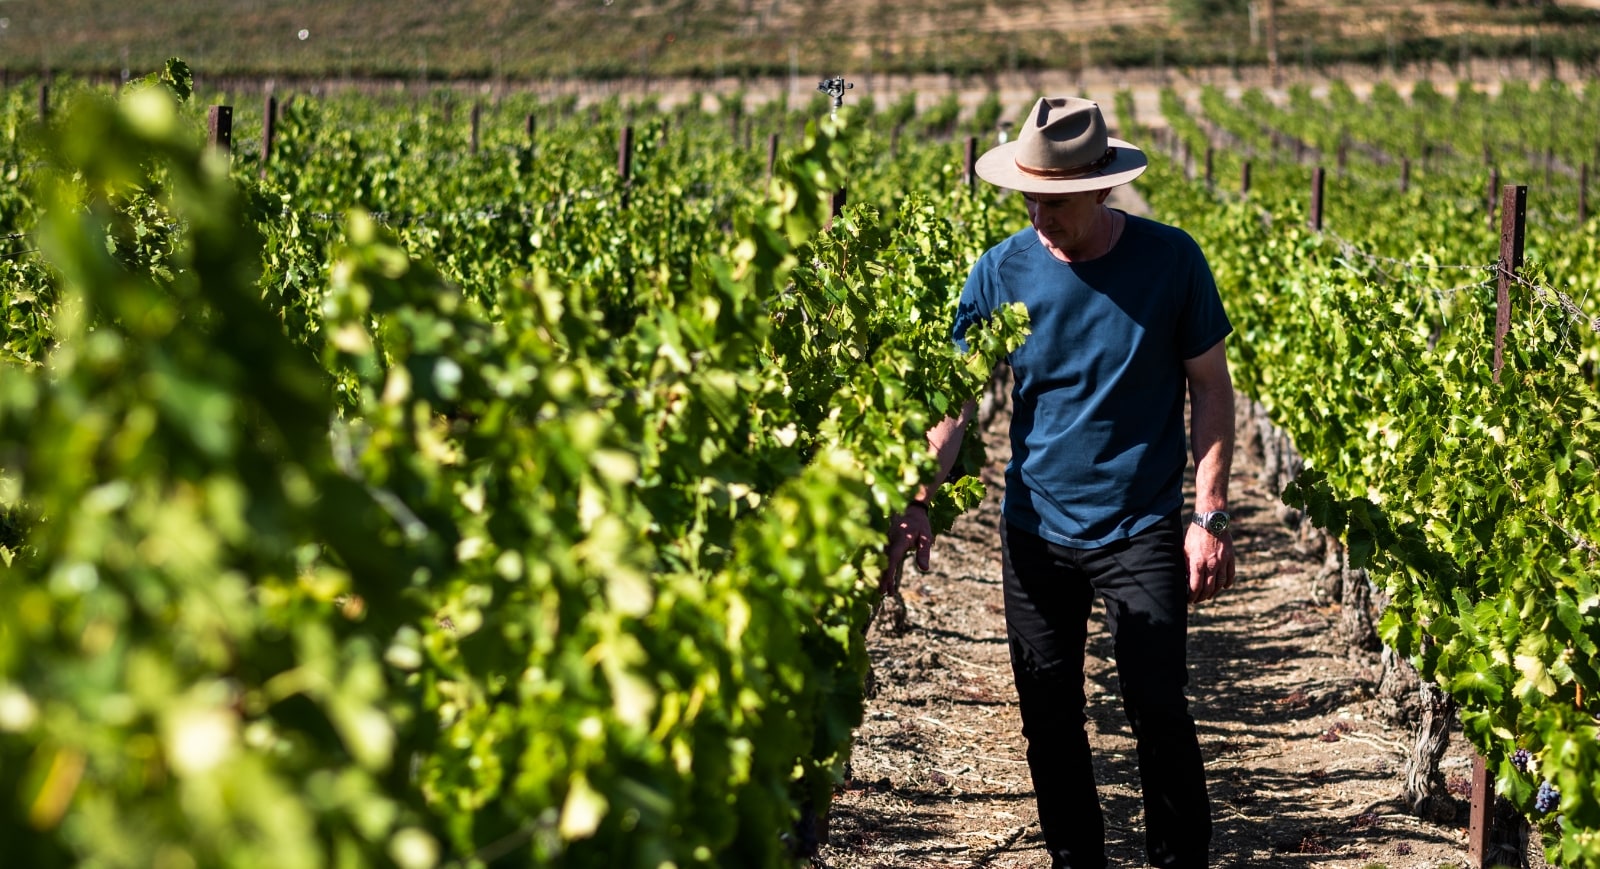 Man wearing hat walking through a vineyard inspecting the vines.